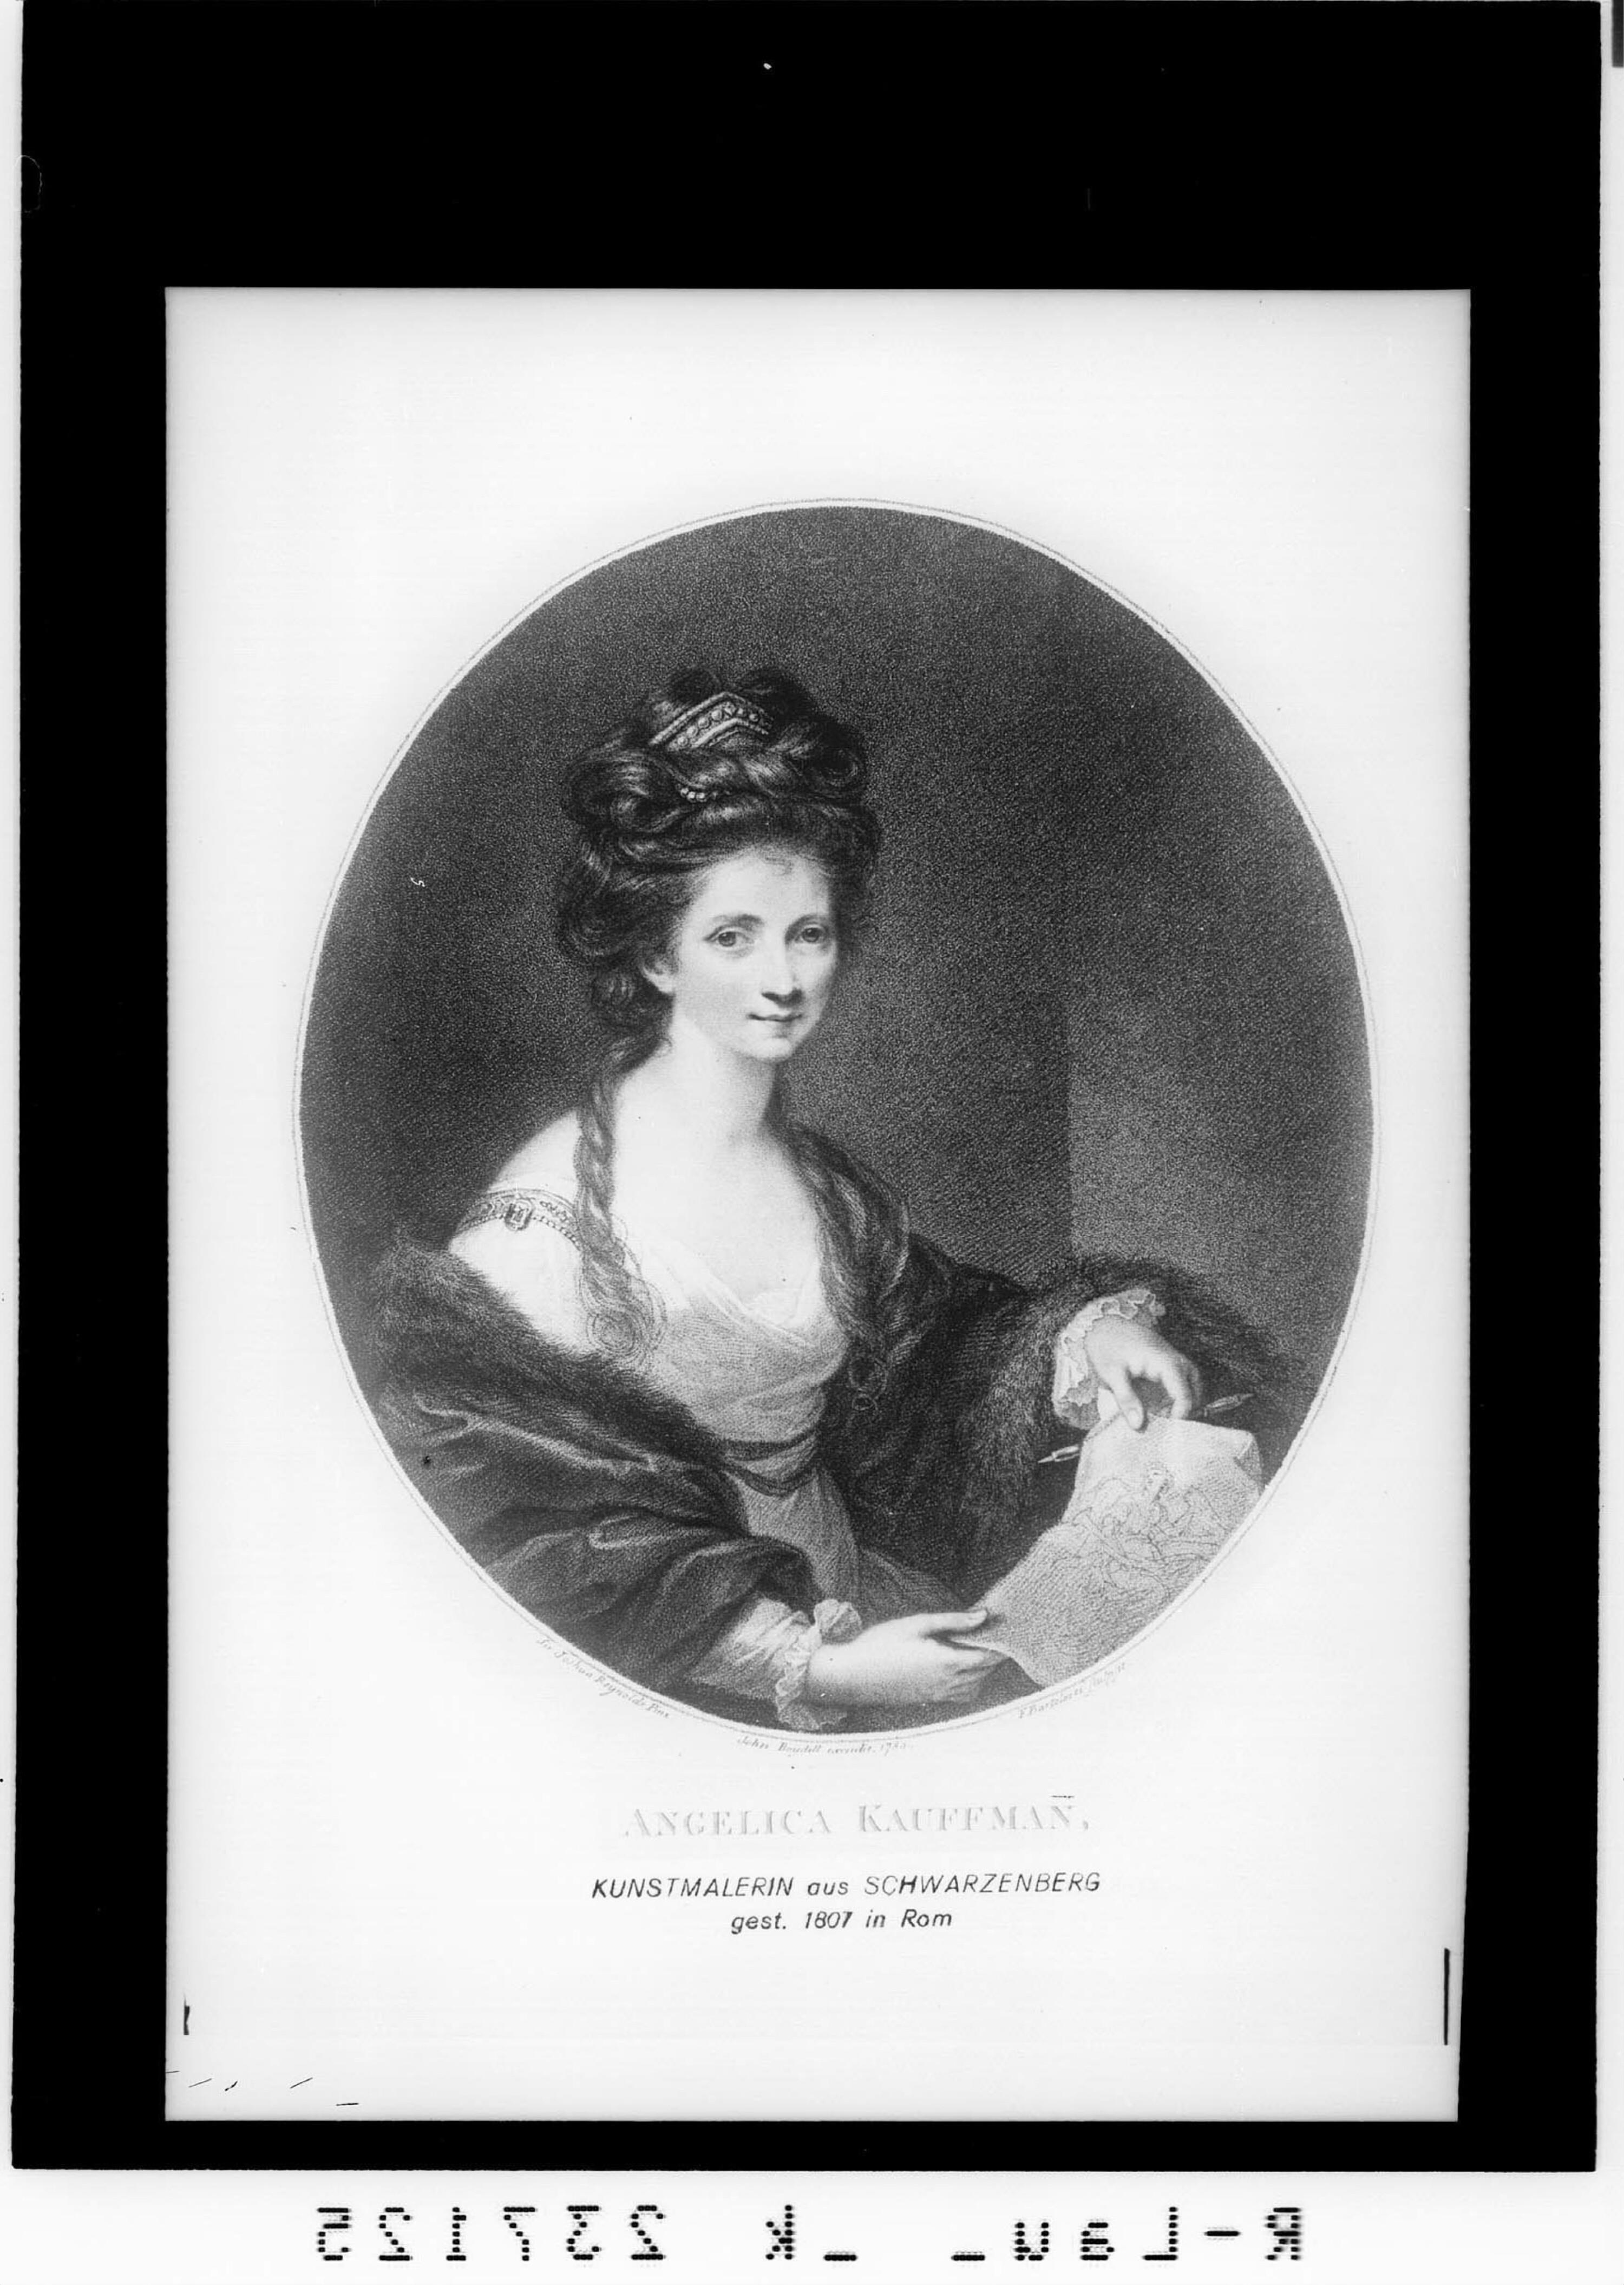 Angelica Kauffman / Kunstmalerin aus Schwarzenberg / gestorben 1807 in Rom></div>


    <hr>
    <div class=